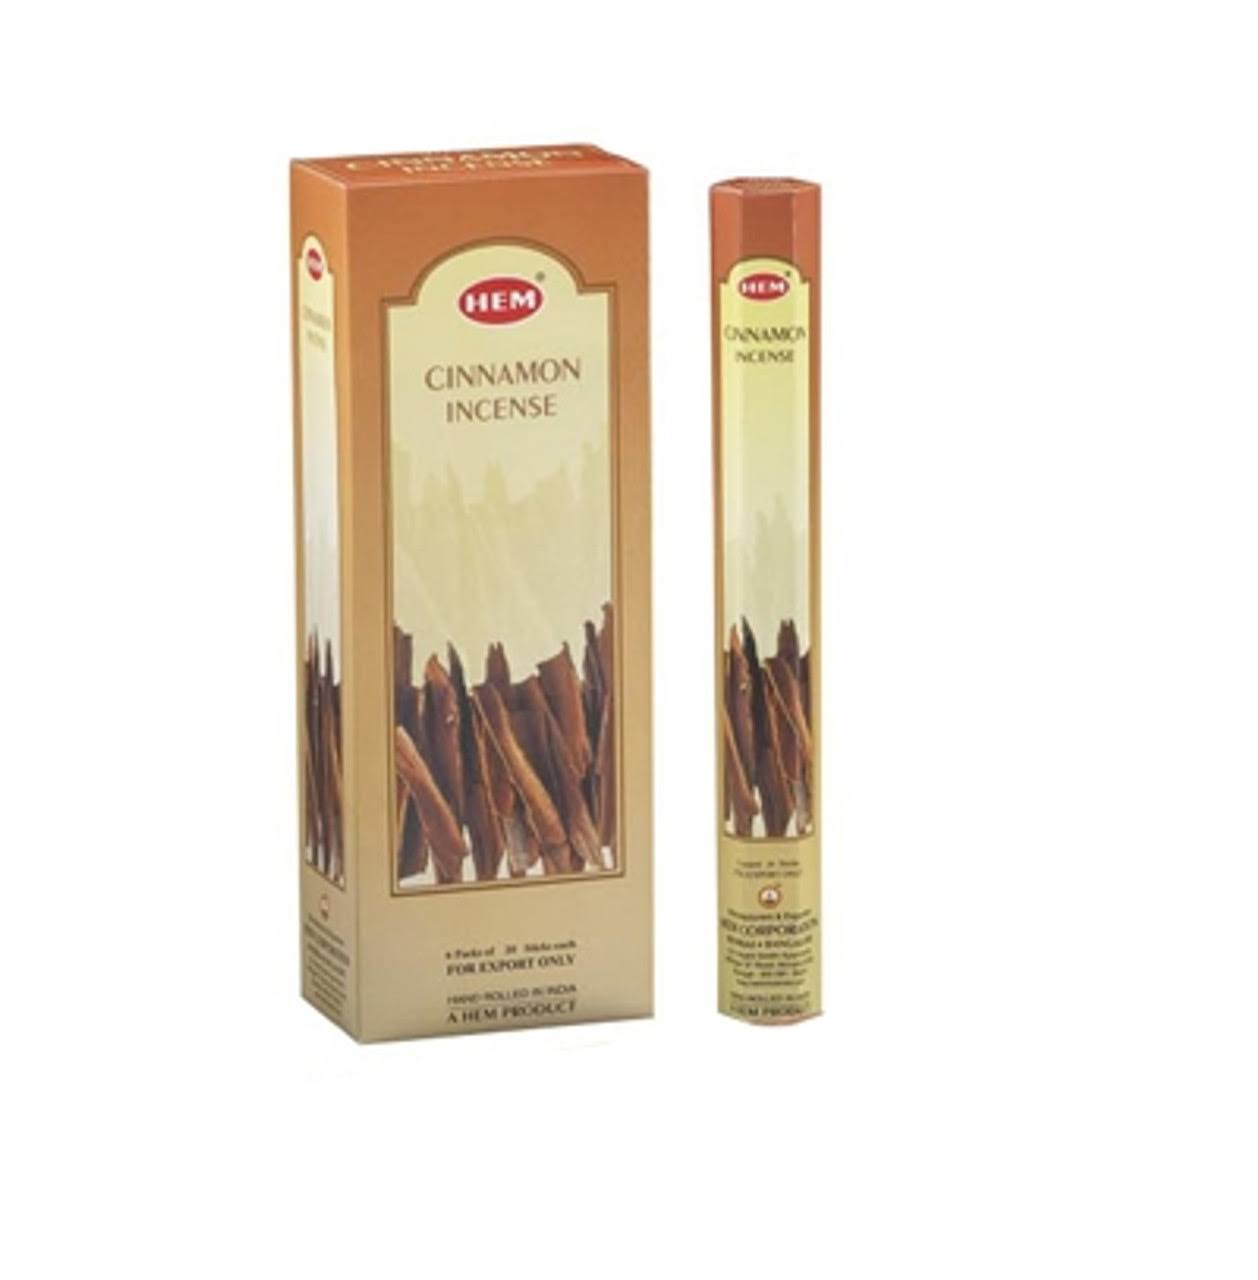 Hem Cinnamon Incense Sticks - 20 Stick